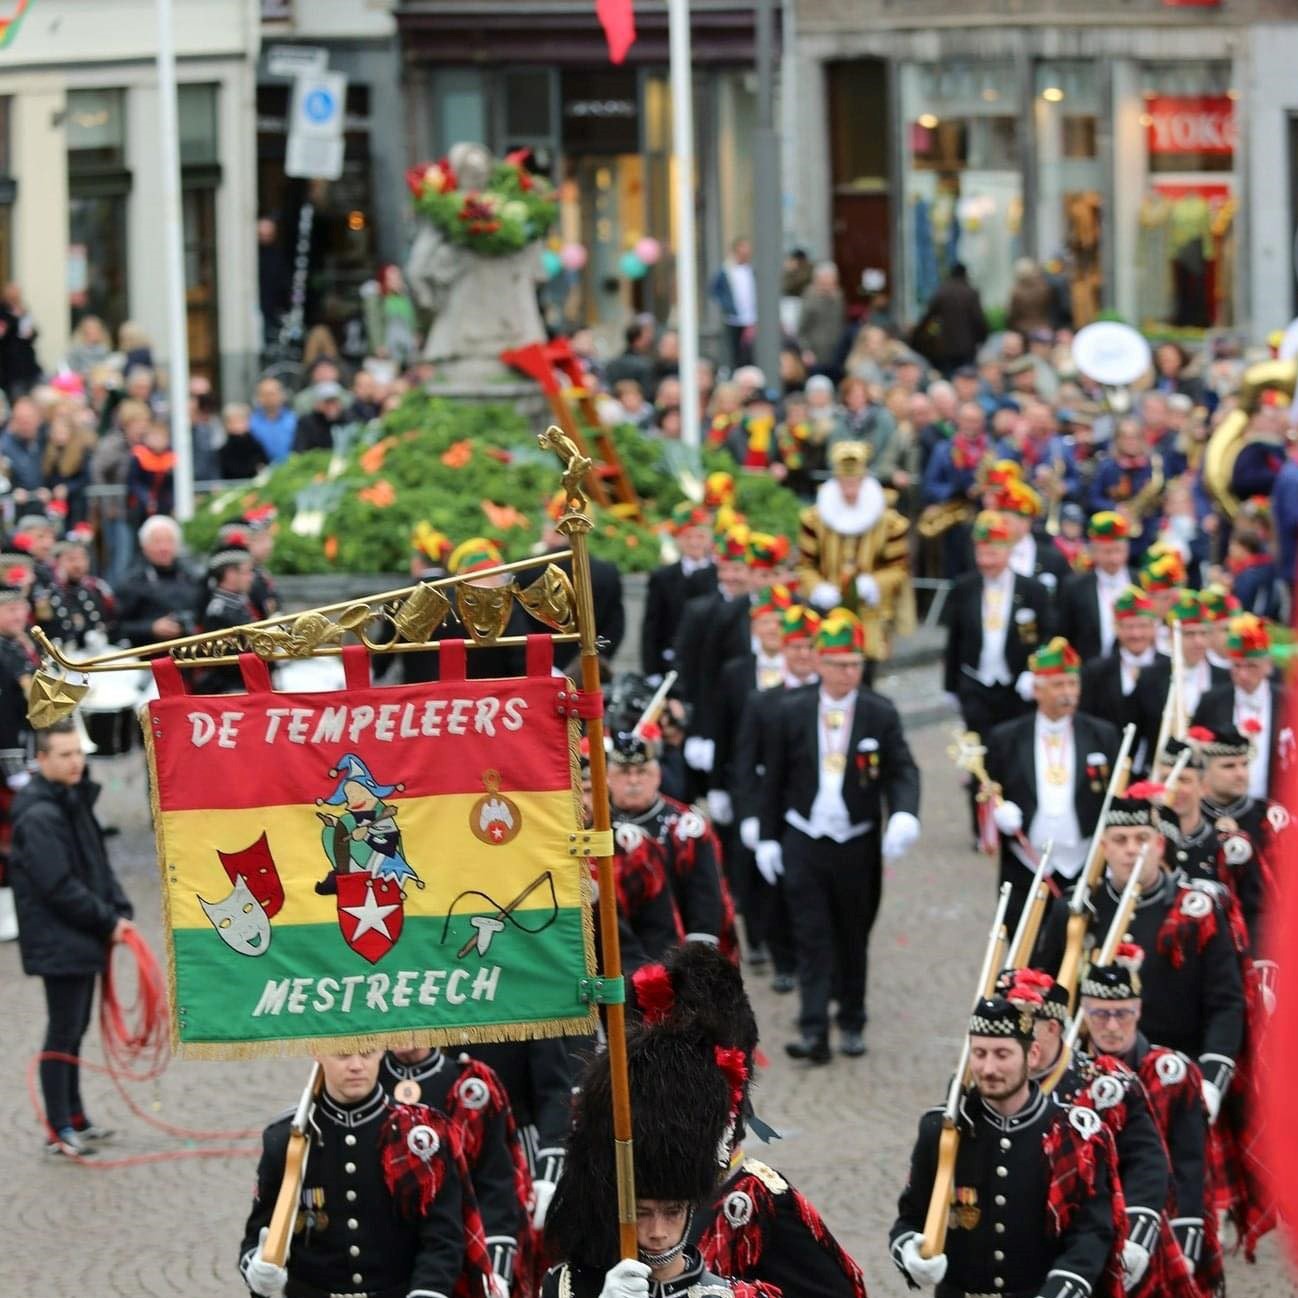 Vestiging Maastricht gesloten tijdens carnaval